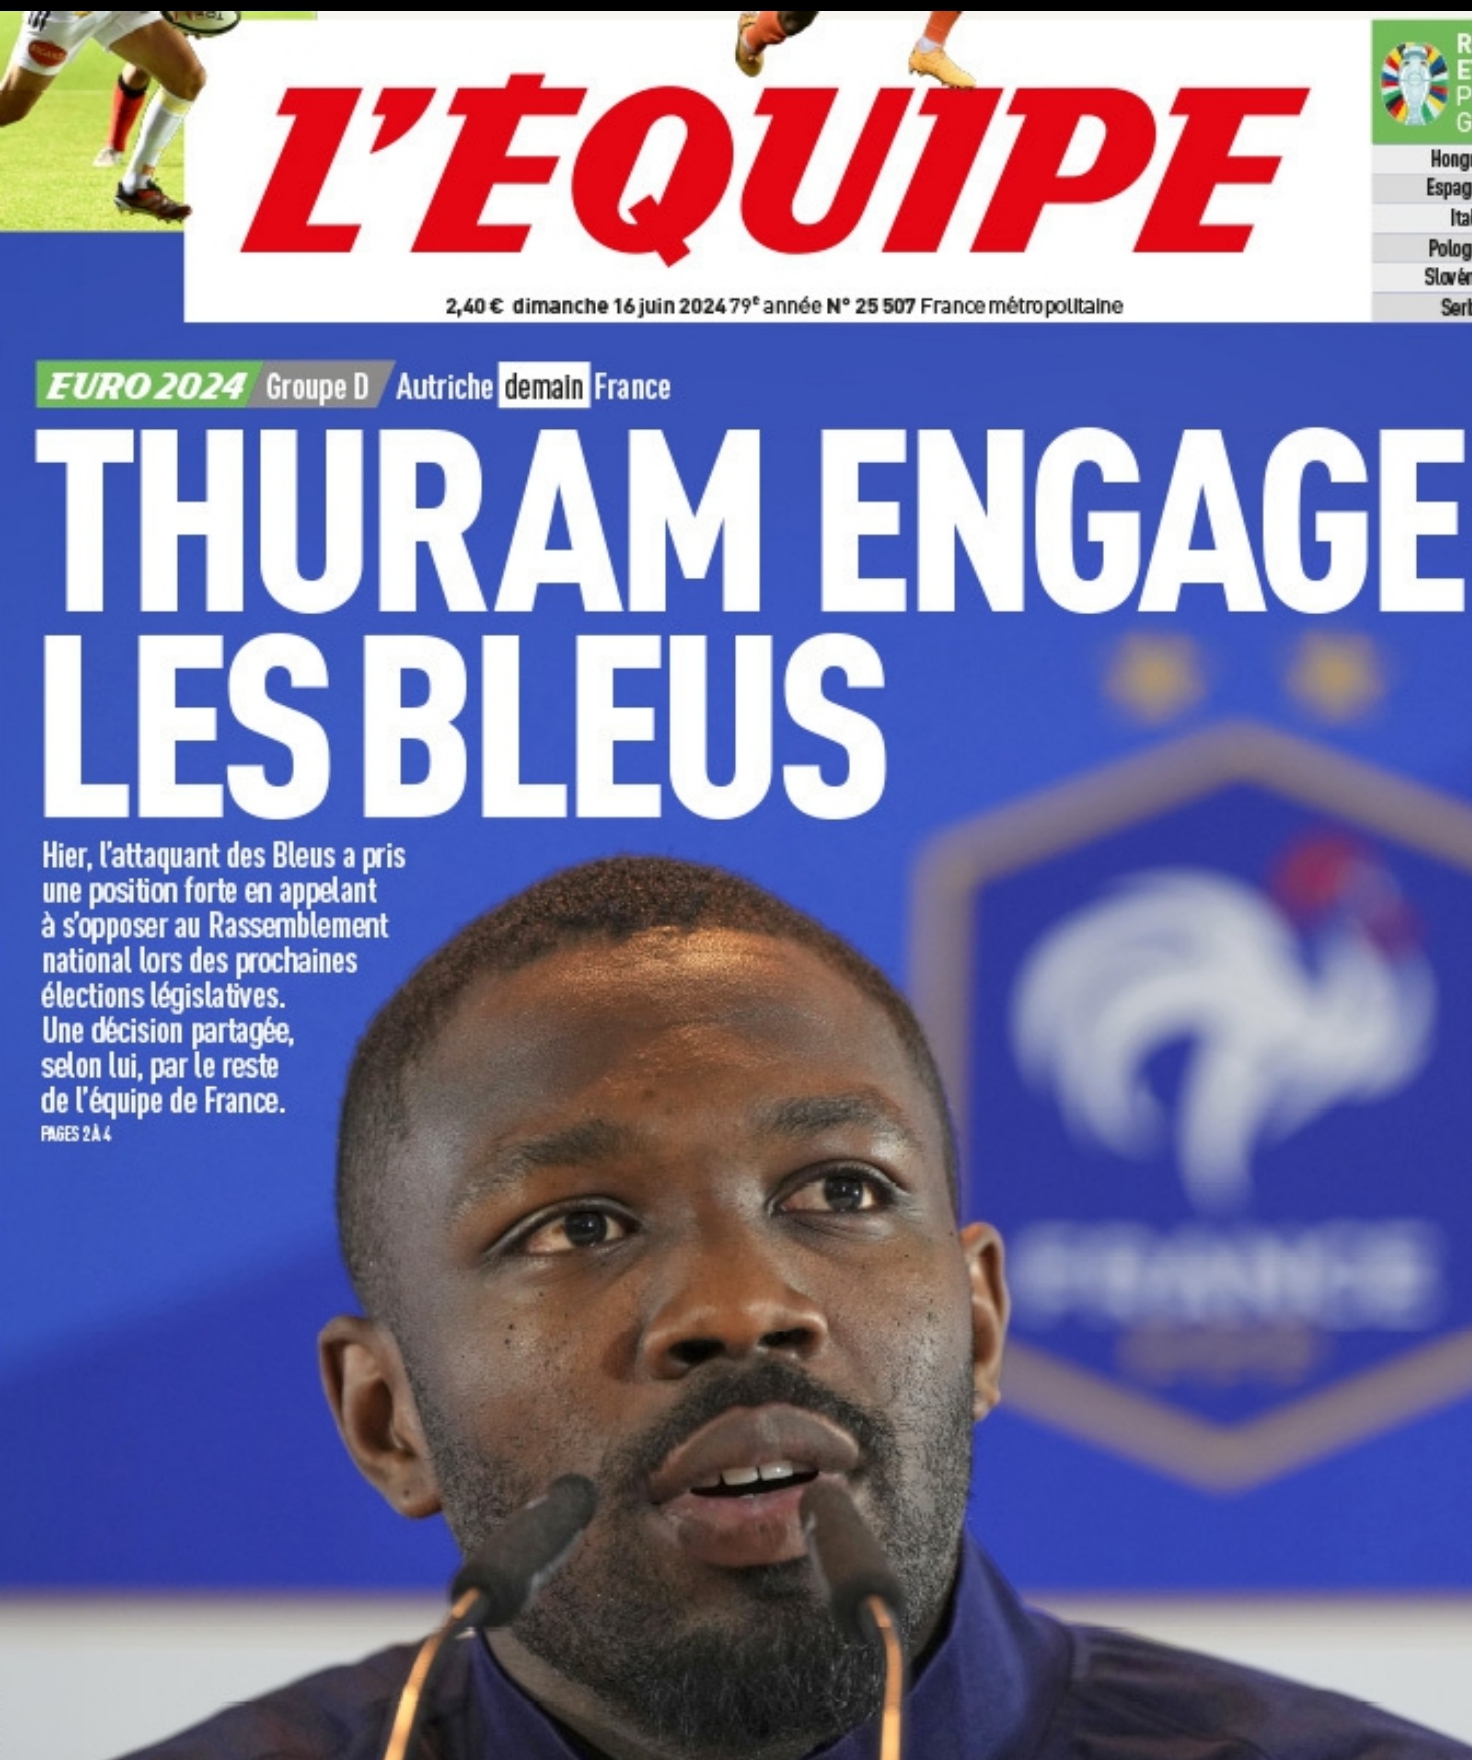 La prima pagina de L'Equipe con l'appello di Marcus Thuram ai francesi a correre al voto per fermare l'avanzare della destra in Francia